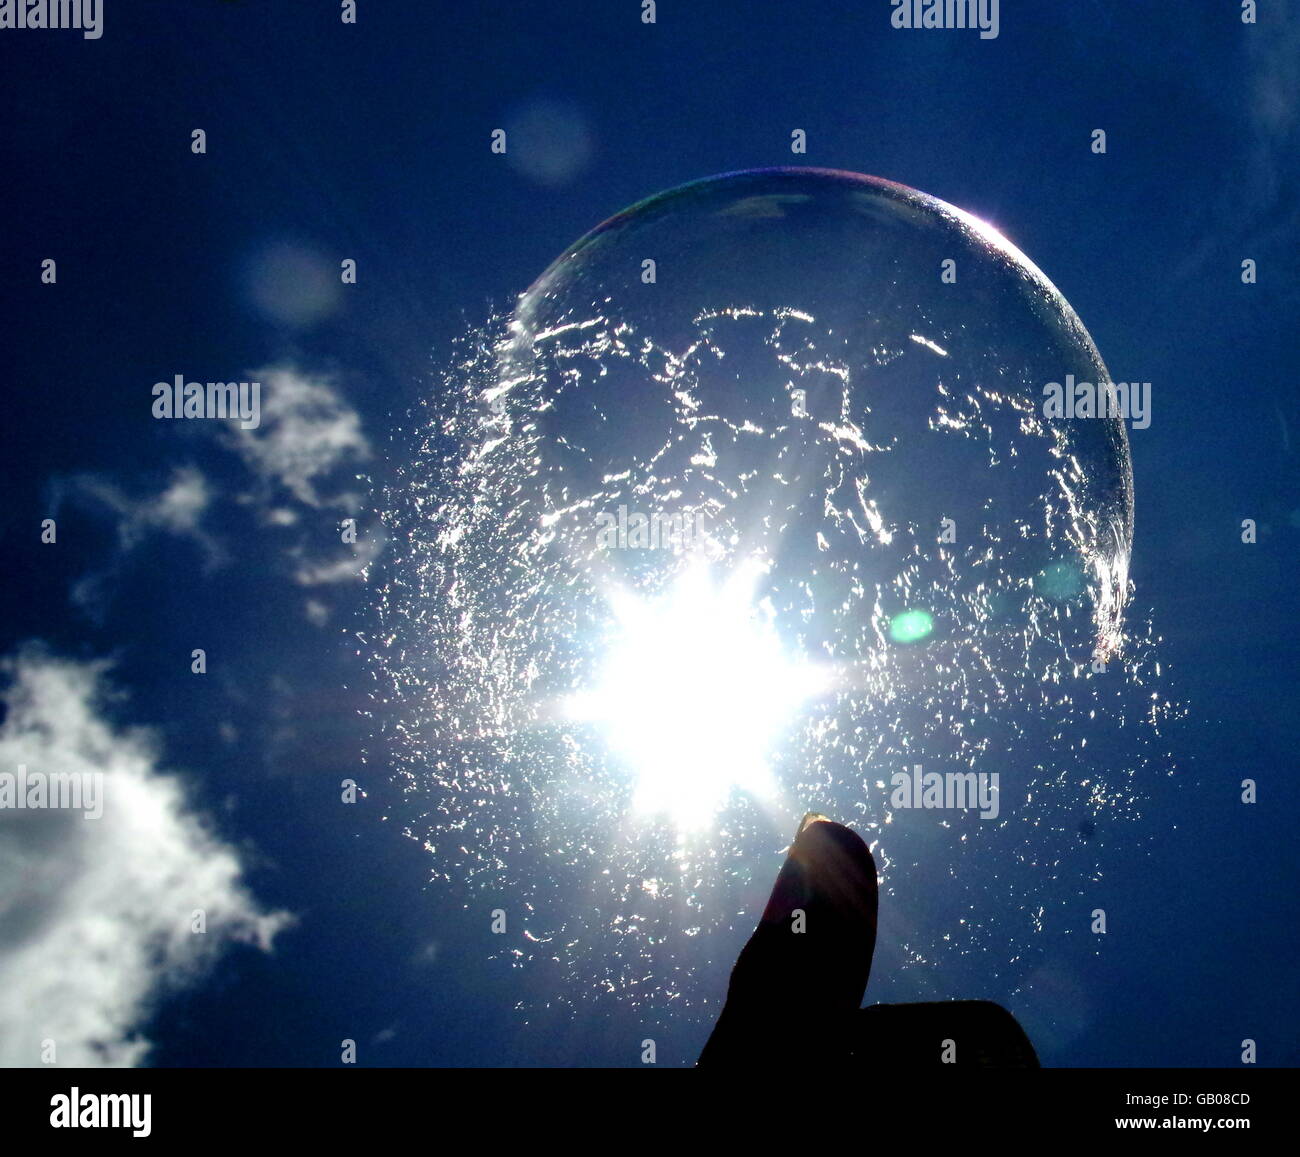 Bubble bursting on fingertip Stock Photo